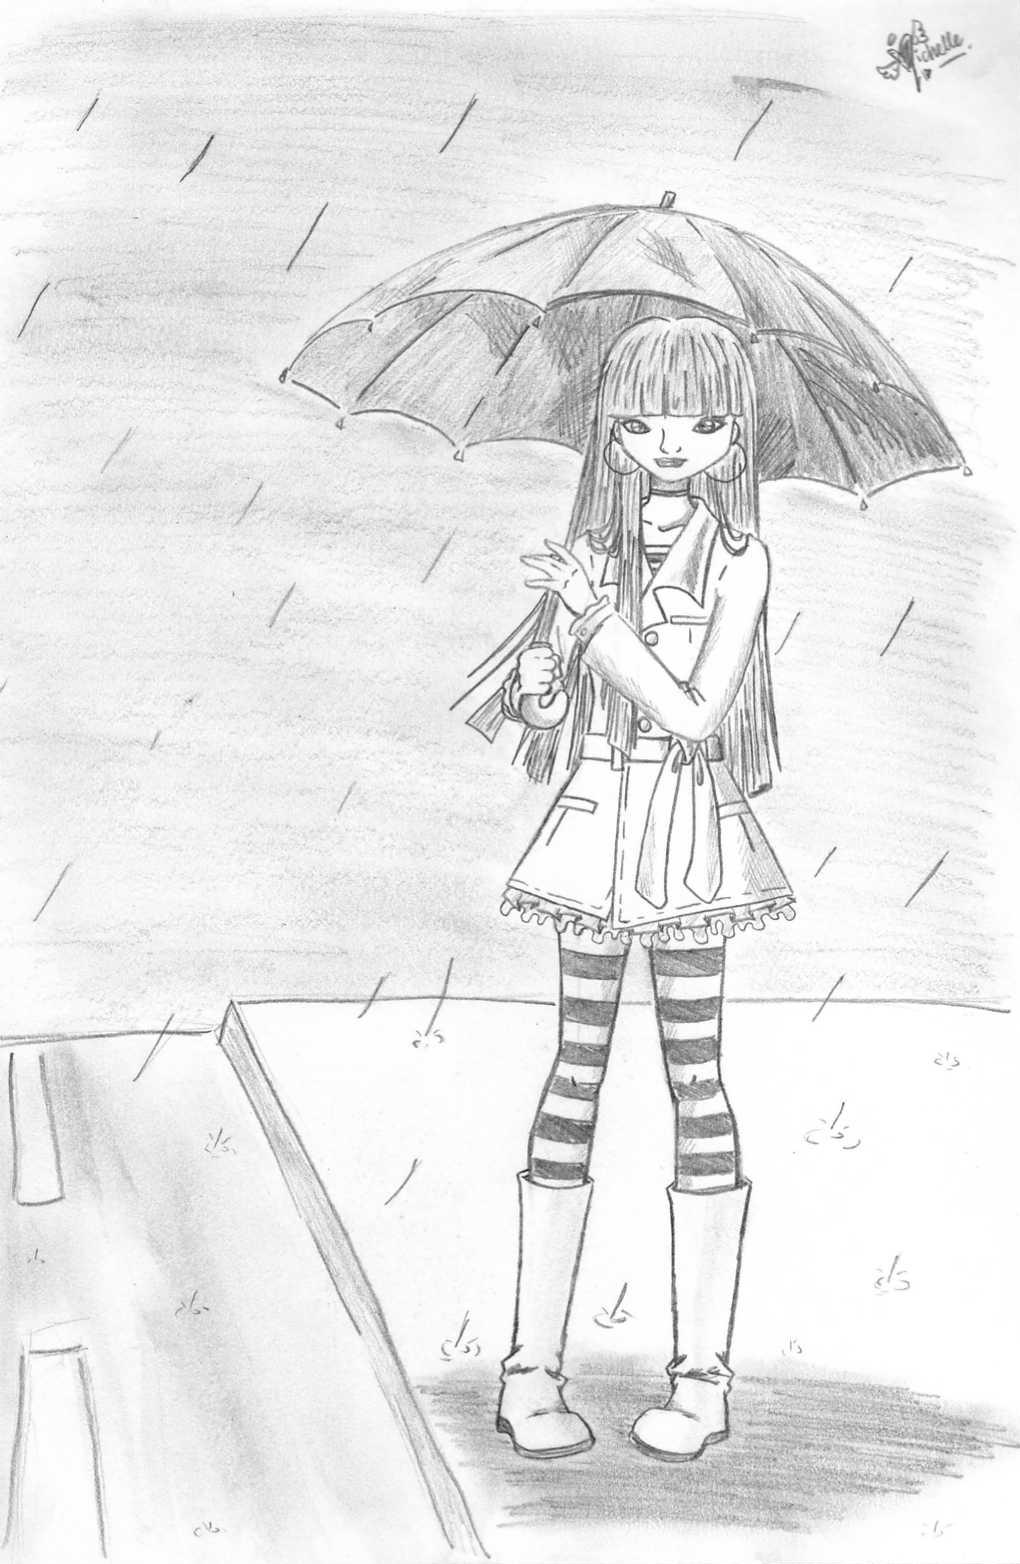 under my umbrella by eLLeAdeLic